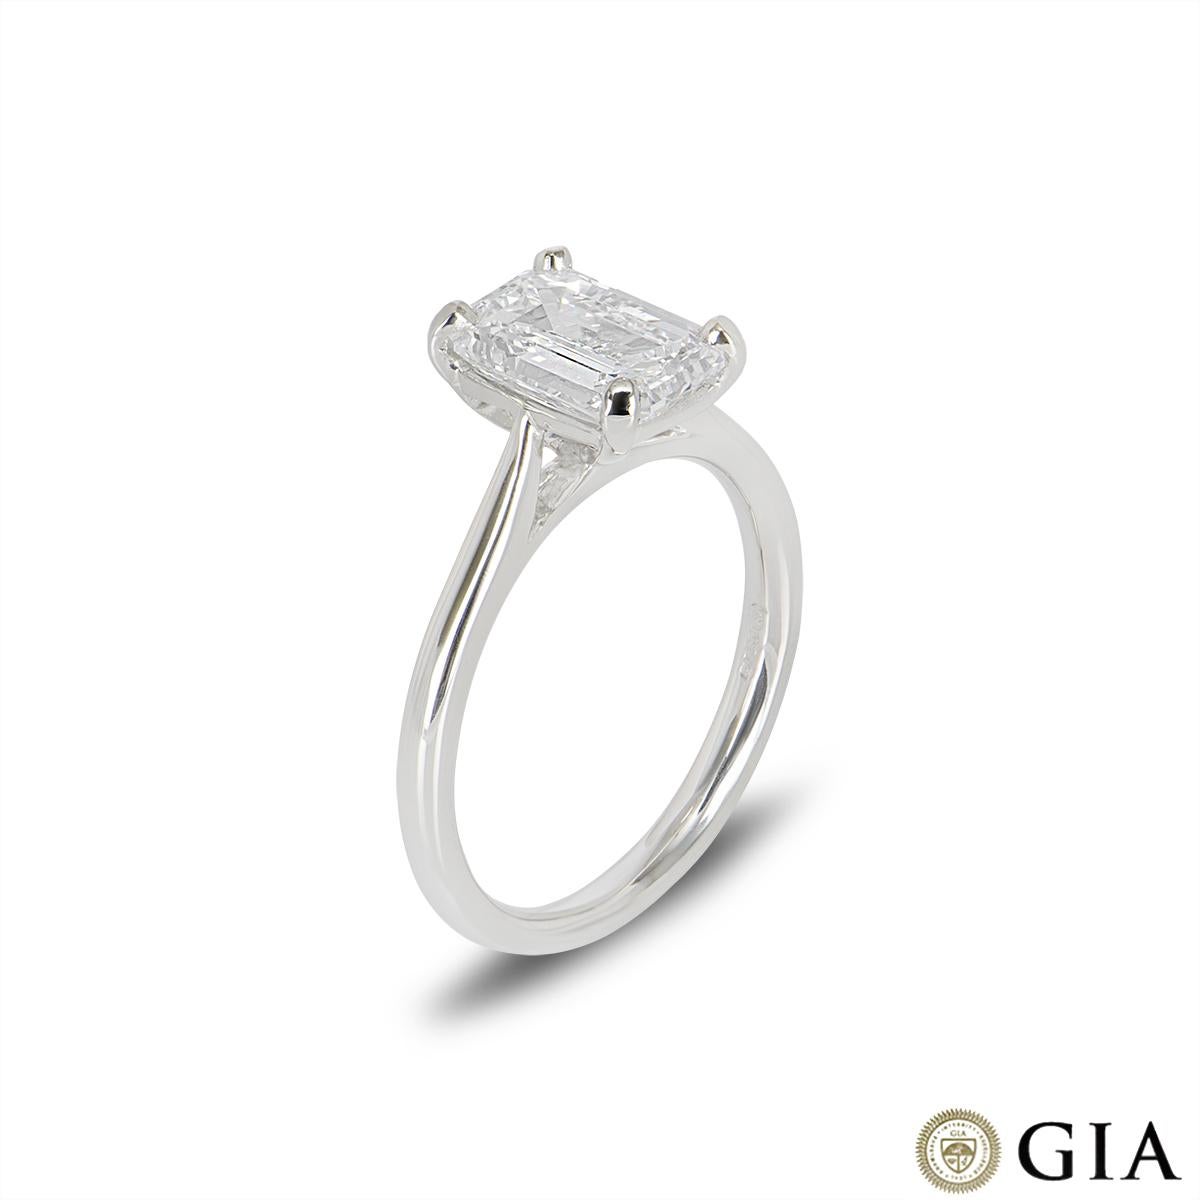 Une superbe bague en platine avec un diamant de taille émeraude. Le diamant est serti dans une monture classique à 4 griffes et pèse 2,01ct, de couleur D et de pureté irréprochable. Cette spectaculaire taille émeraude est certifiée comme étant un